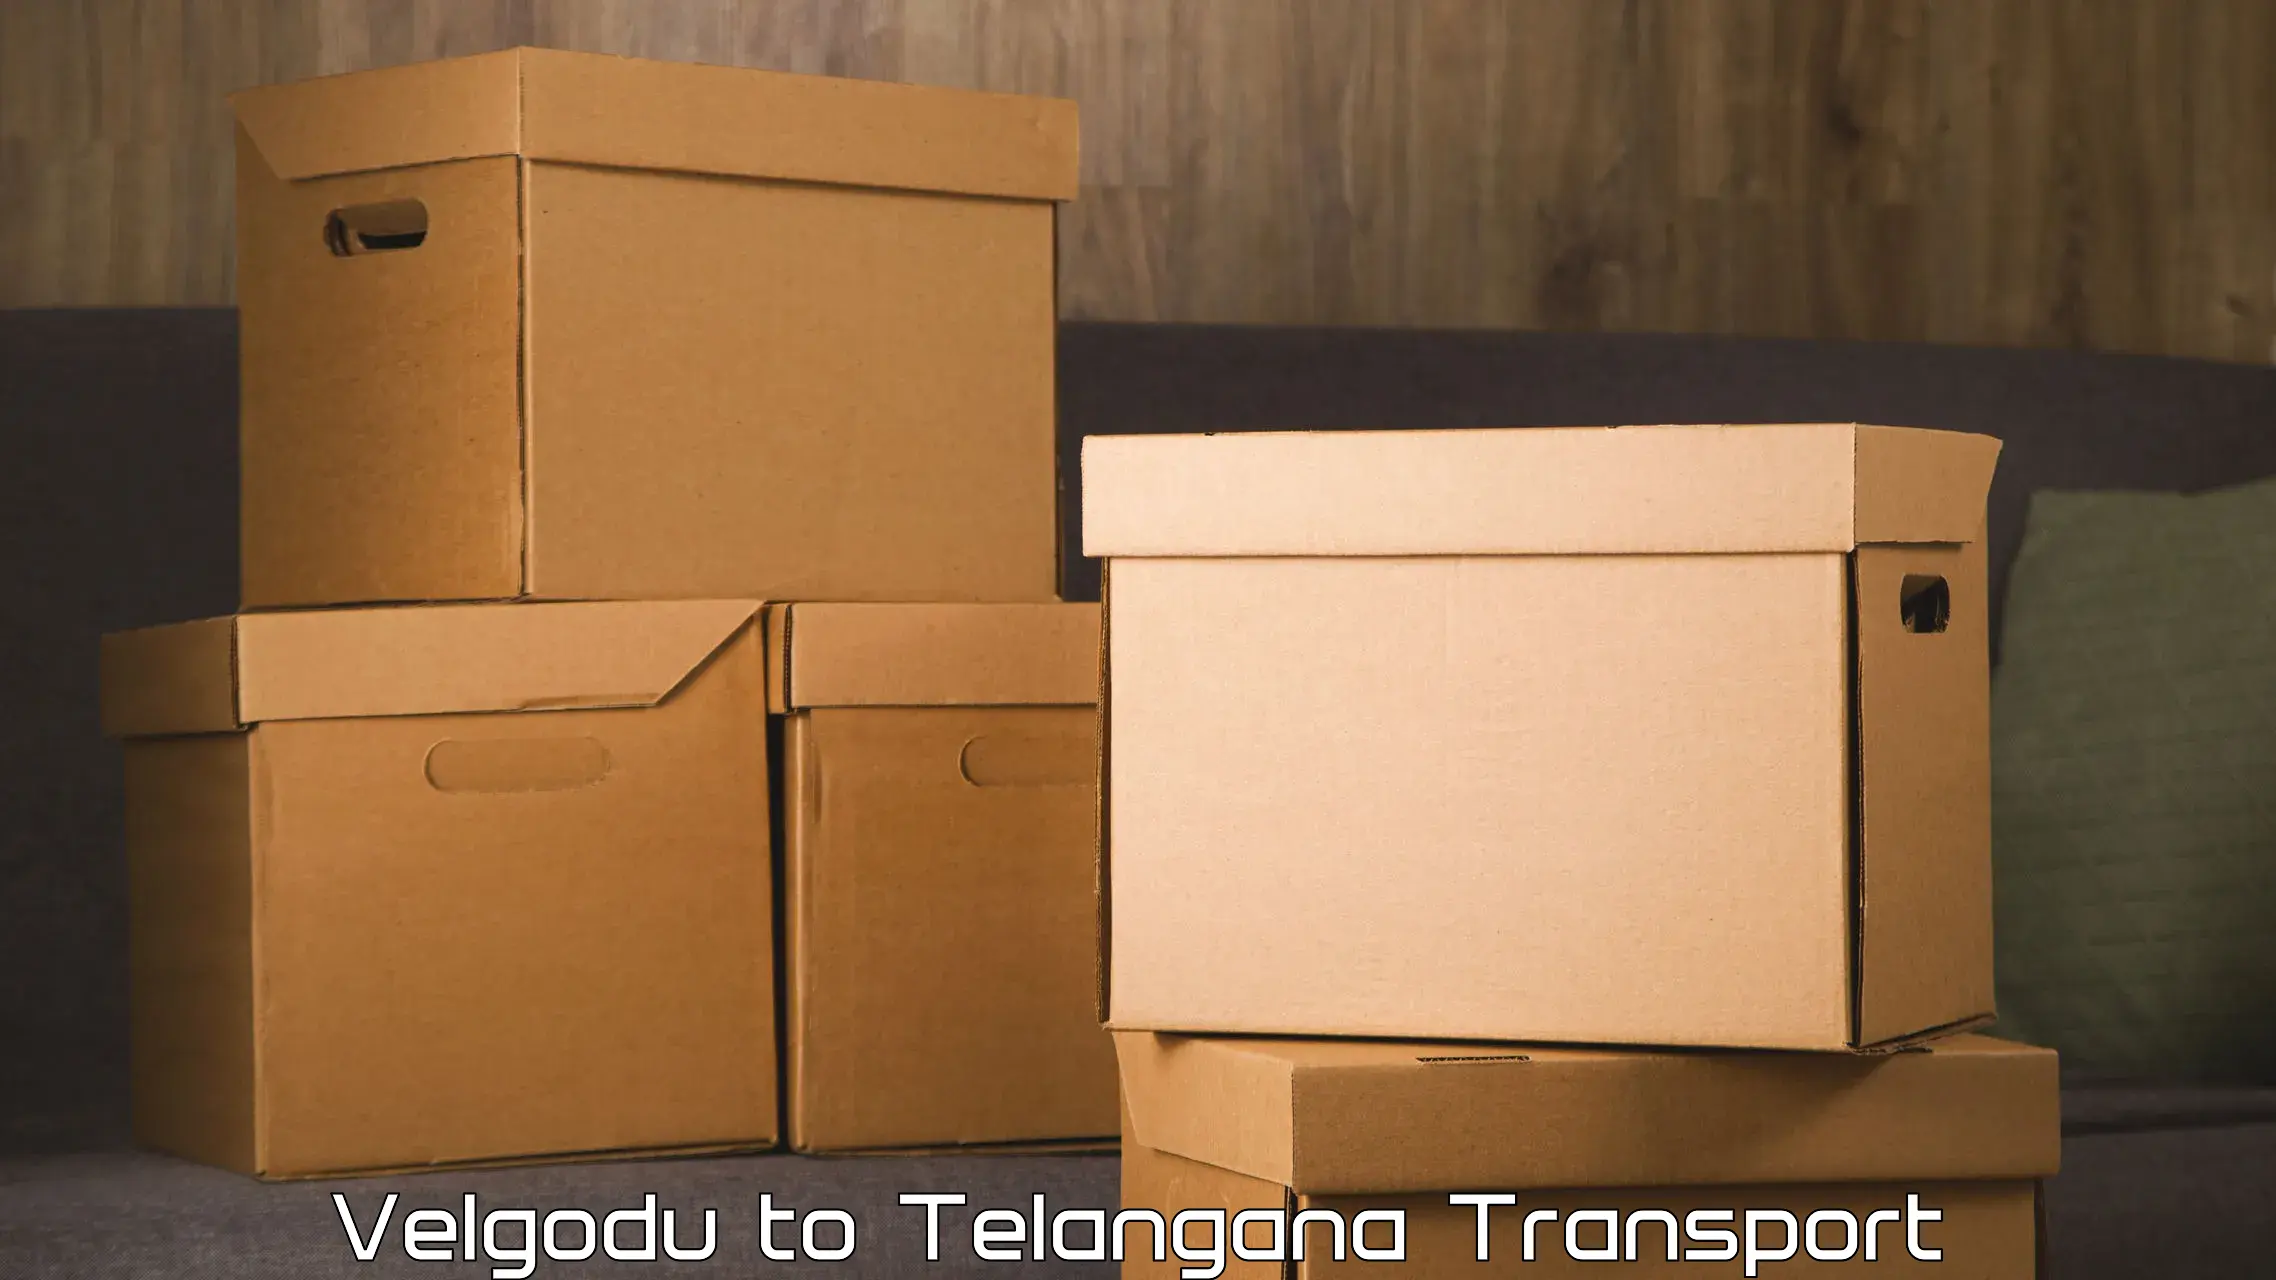 Furniture transport service Velgodu to Yellareddy